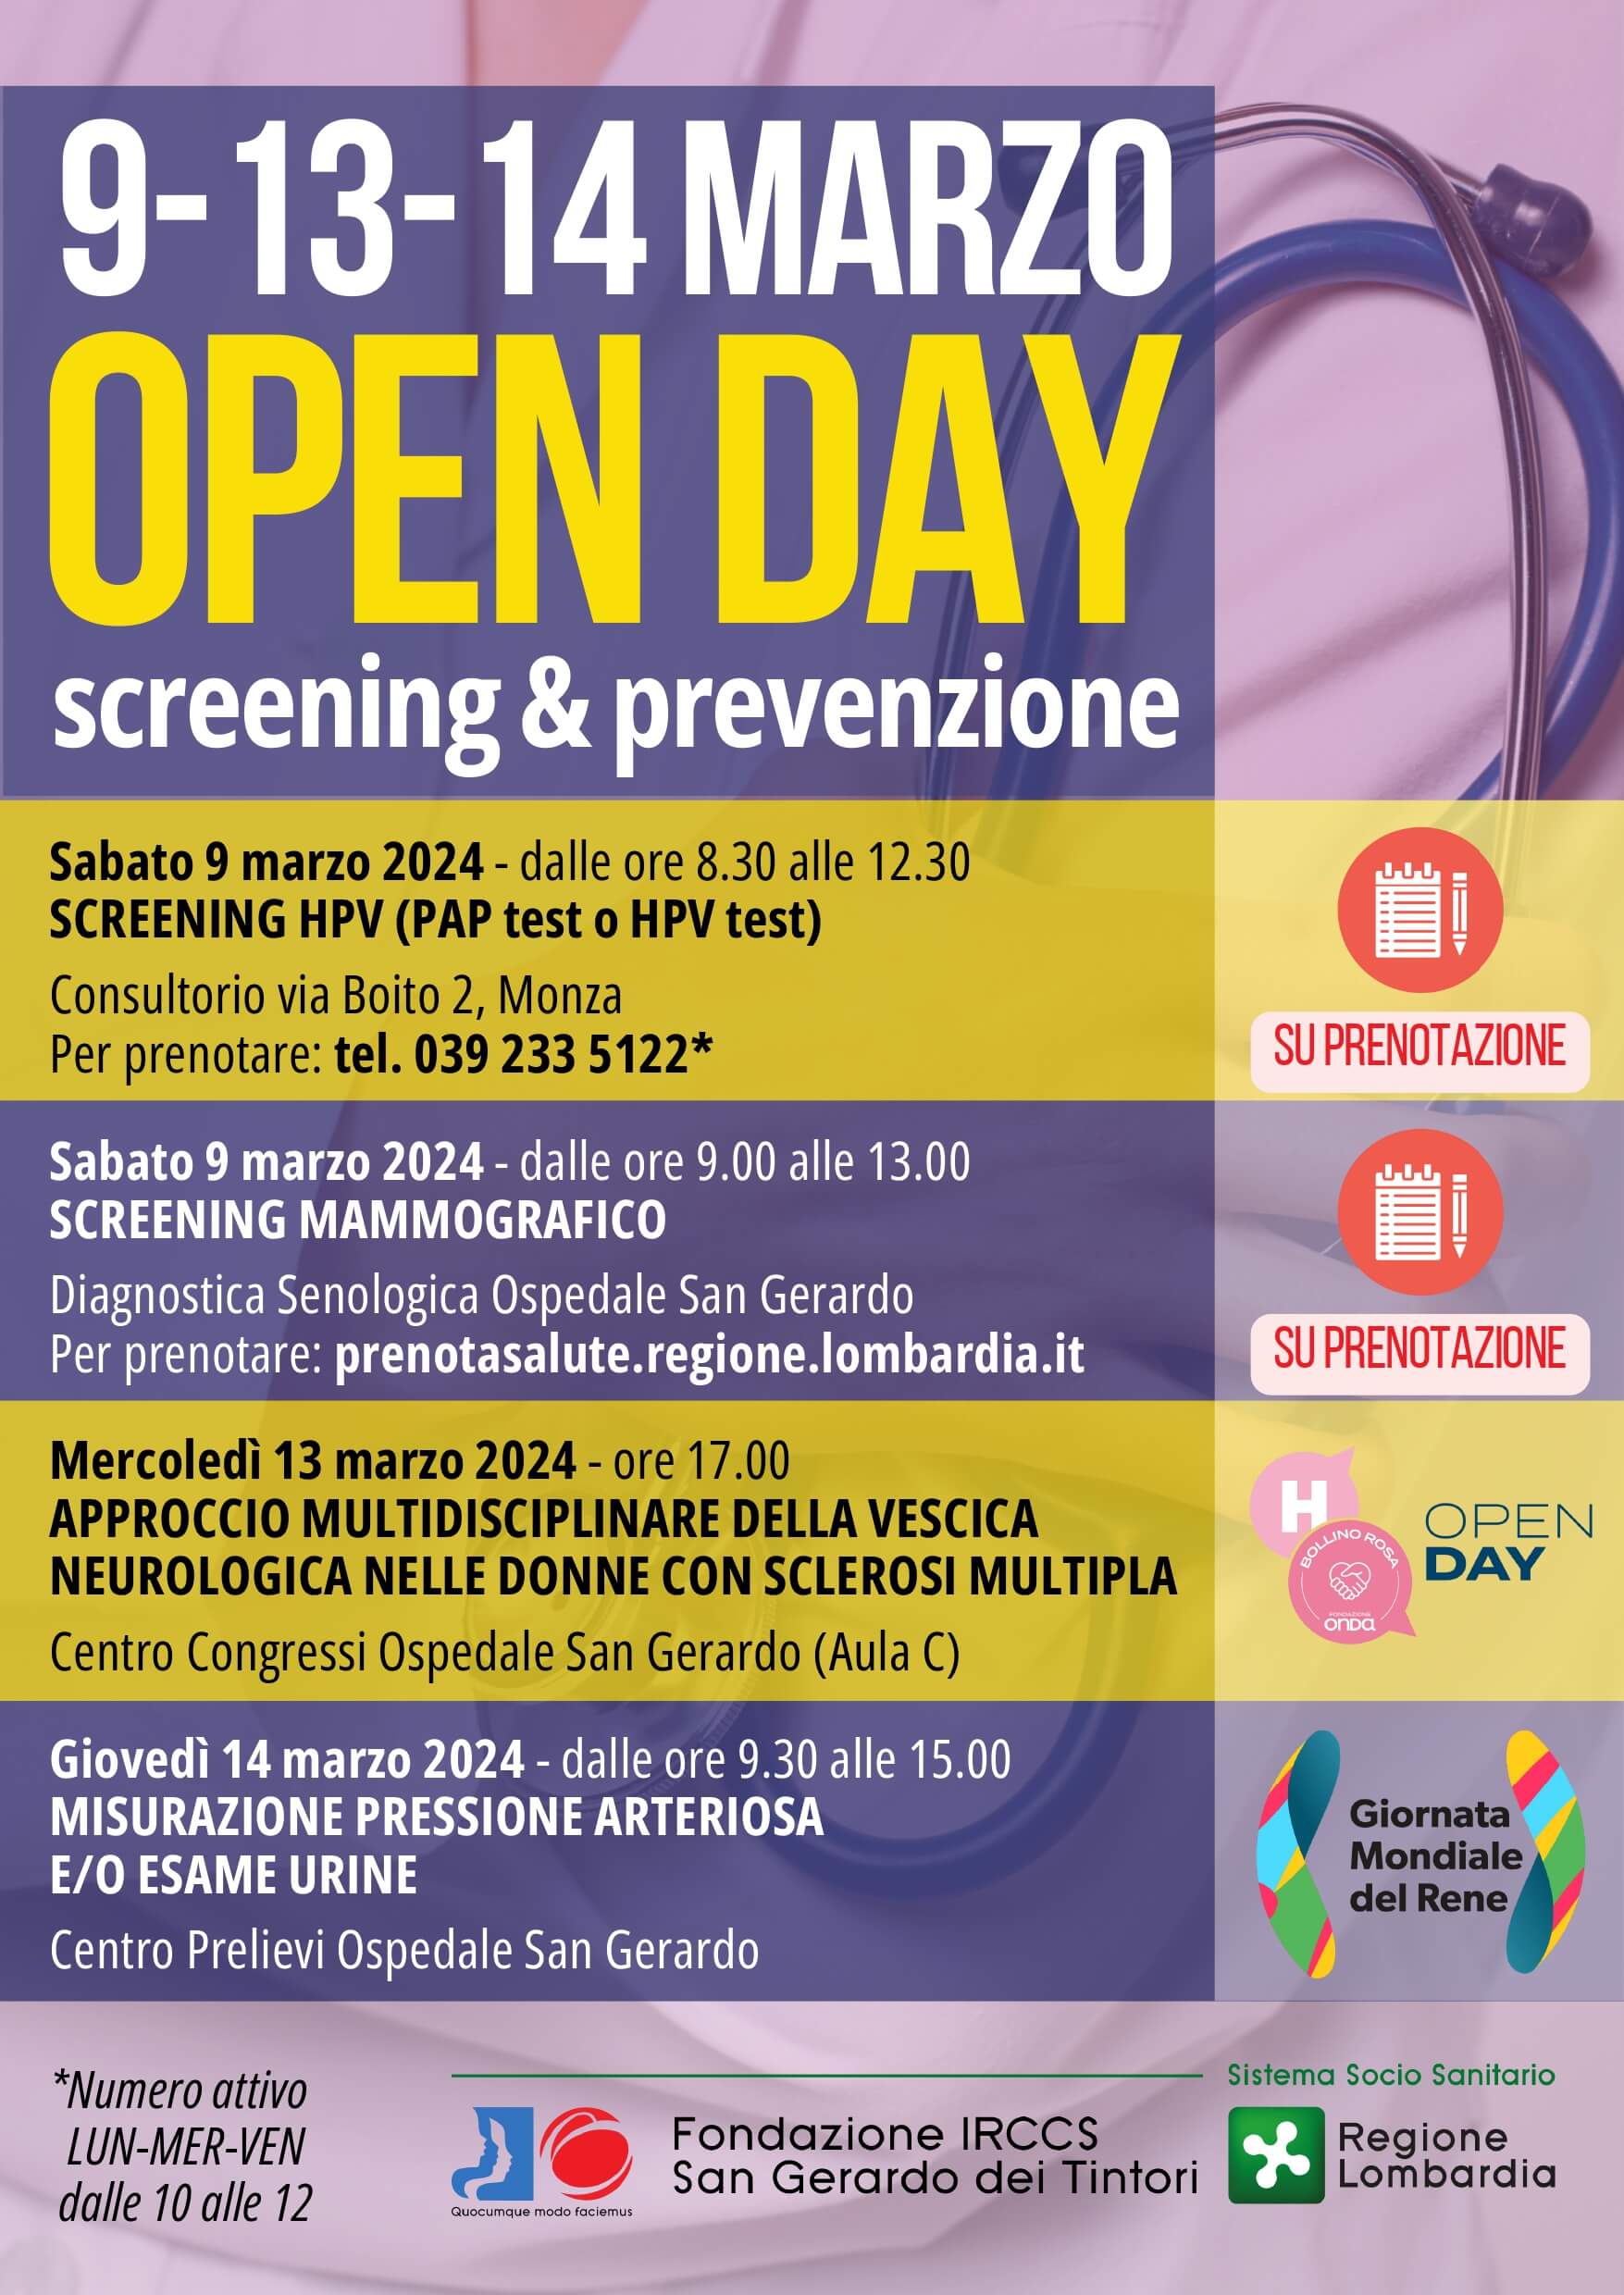  Open day screening e prevenzione 9, 13, 14 marzo 